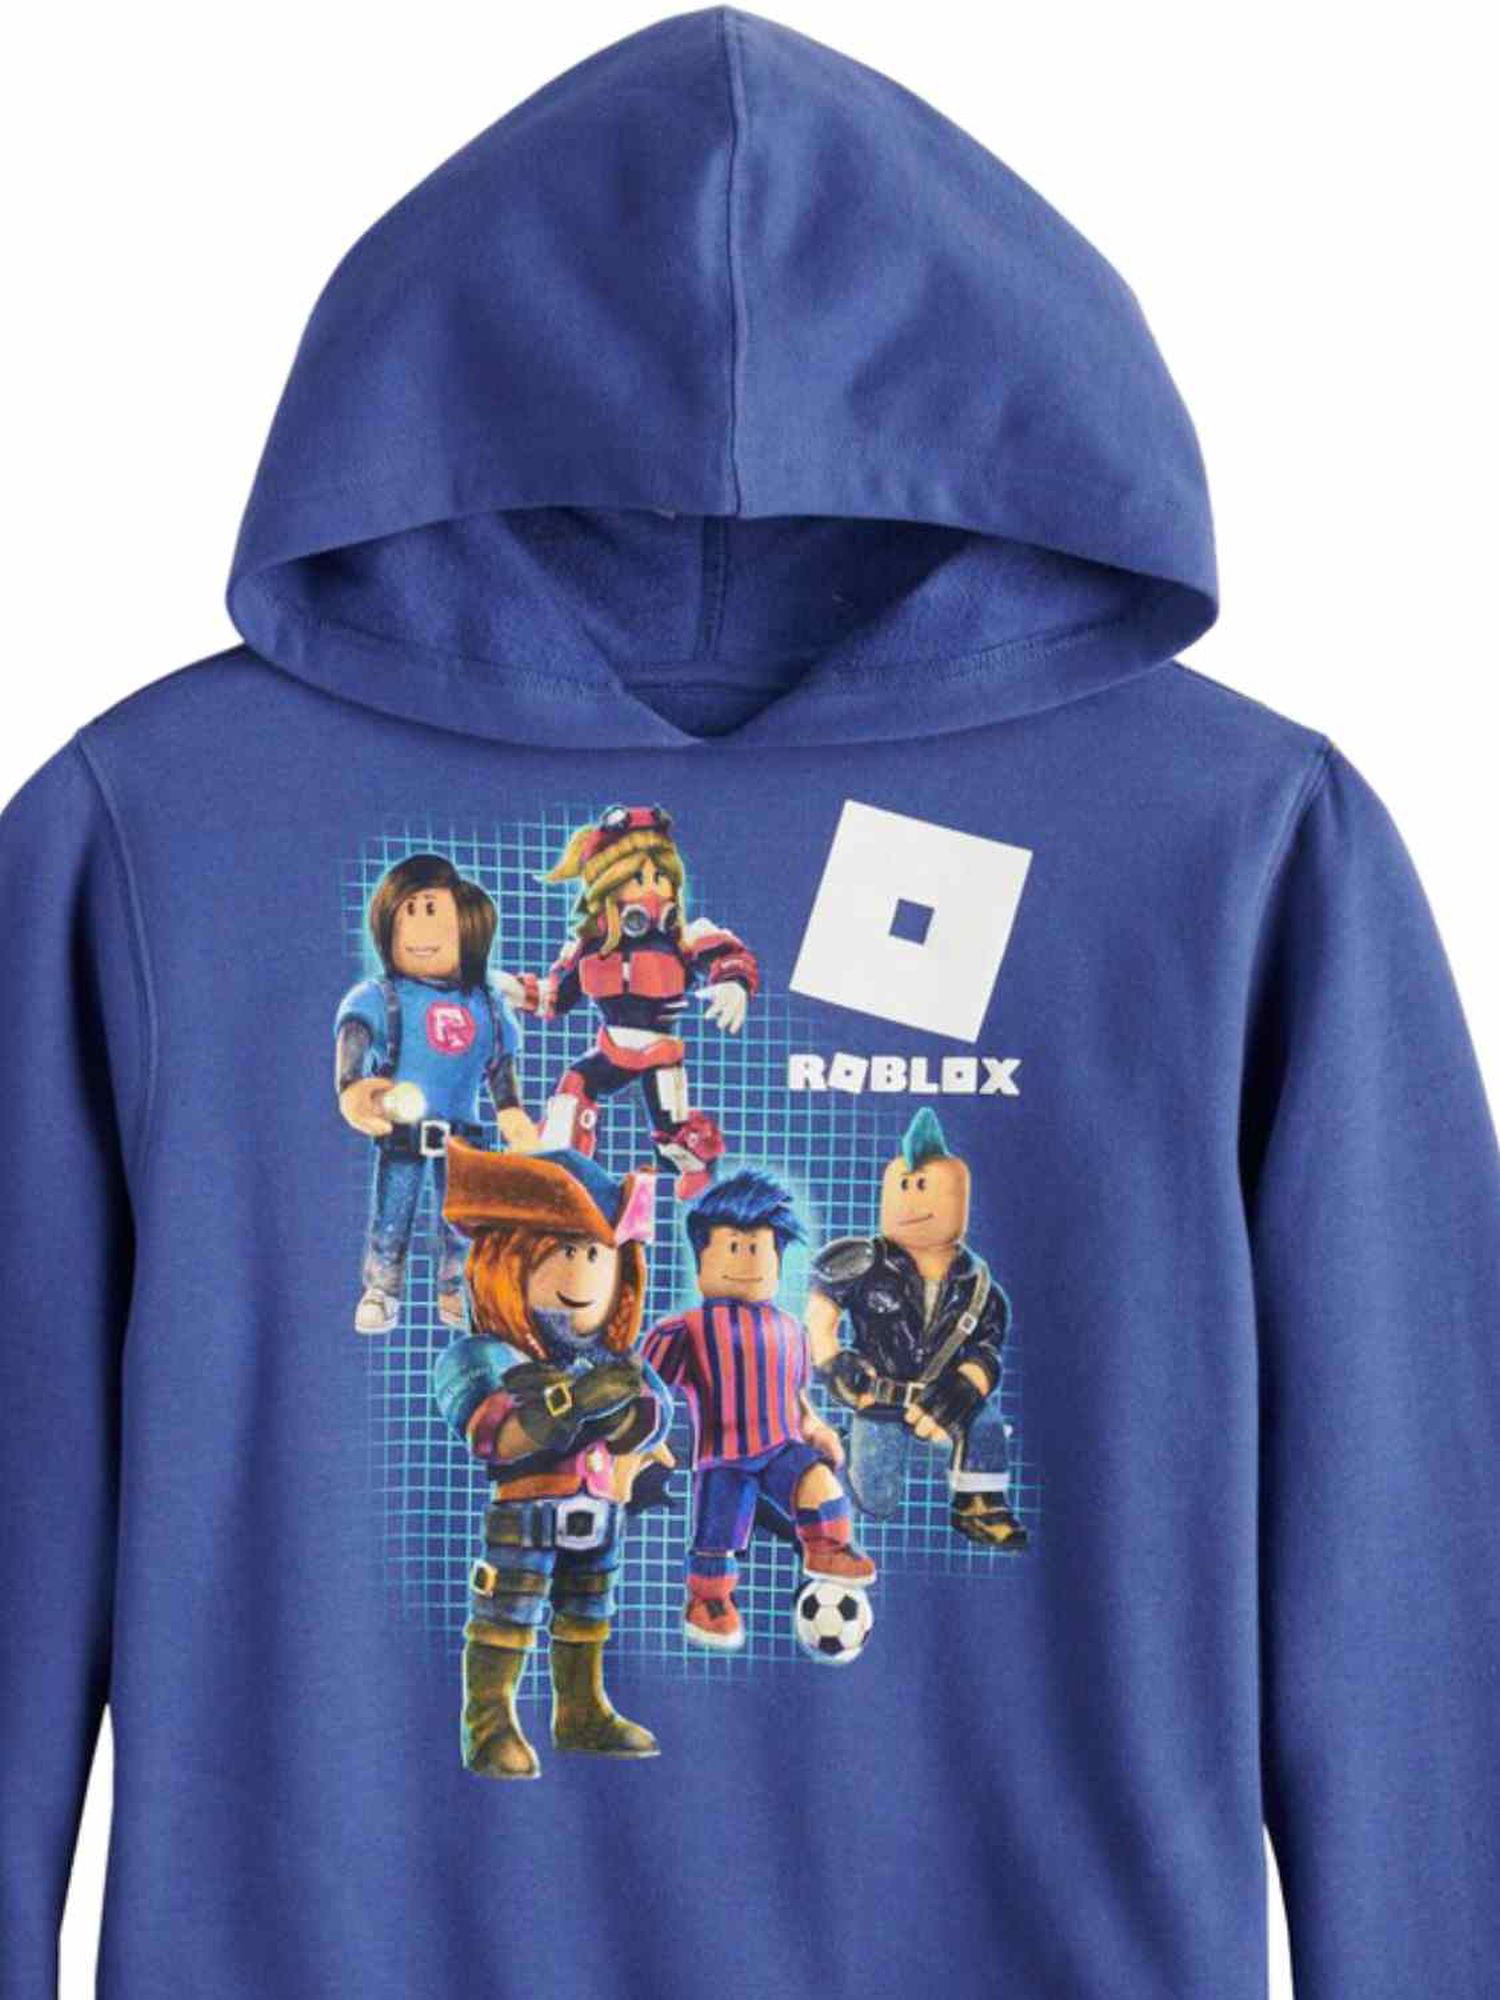 Roblox Big Boys Blue Geometric Multi Character Pullover Hoodie Sweatshirt Walmart Com Walmart Com - trash hoodie black roblox